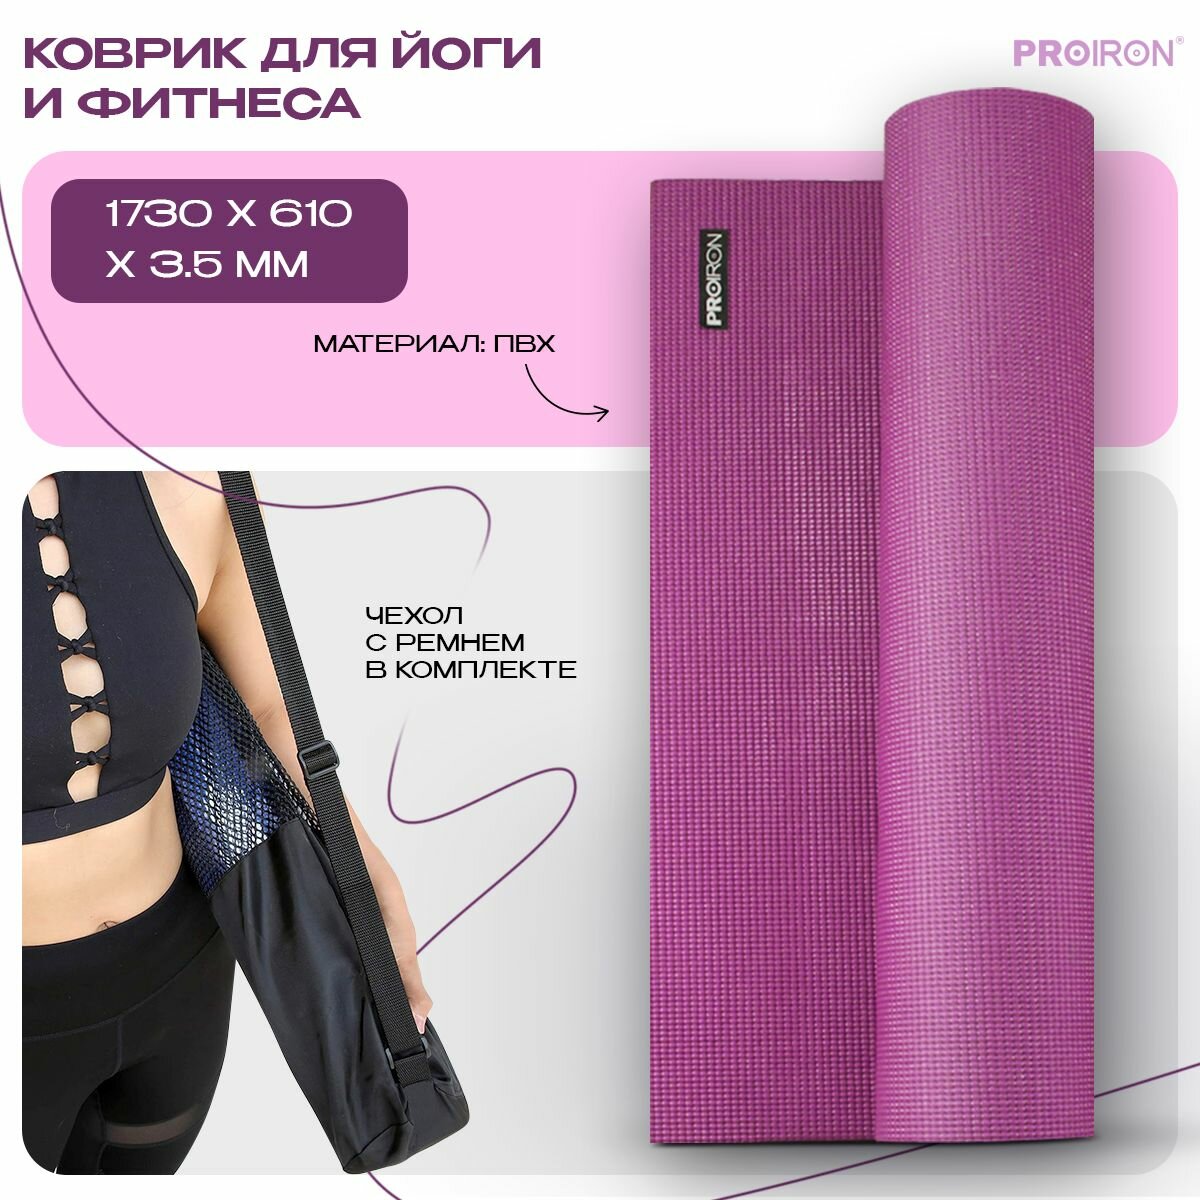 Коврик для фитнеса и йоги нескользящий PROIRON, размеры 1730х610х3,5 мм, ПВХ, фиолетовый